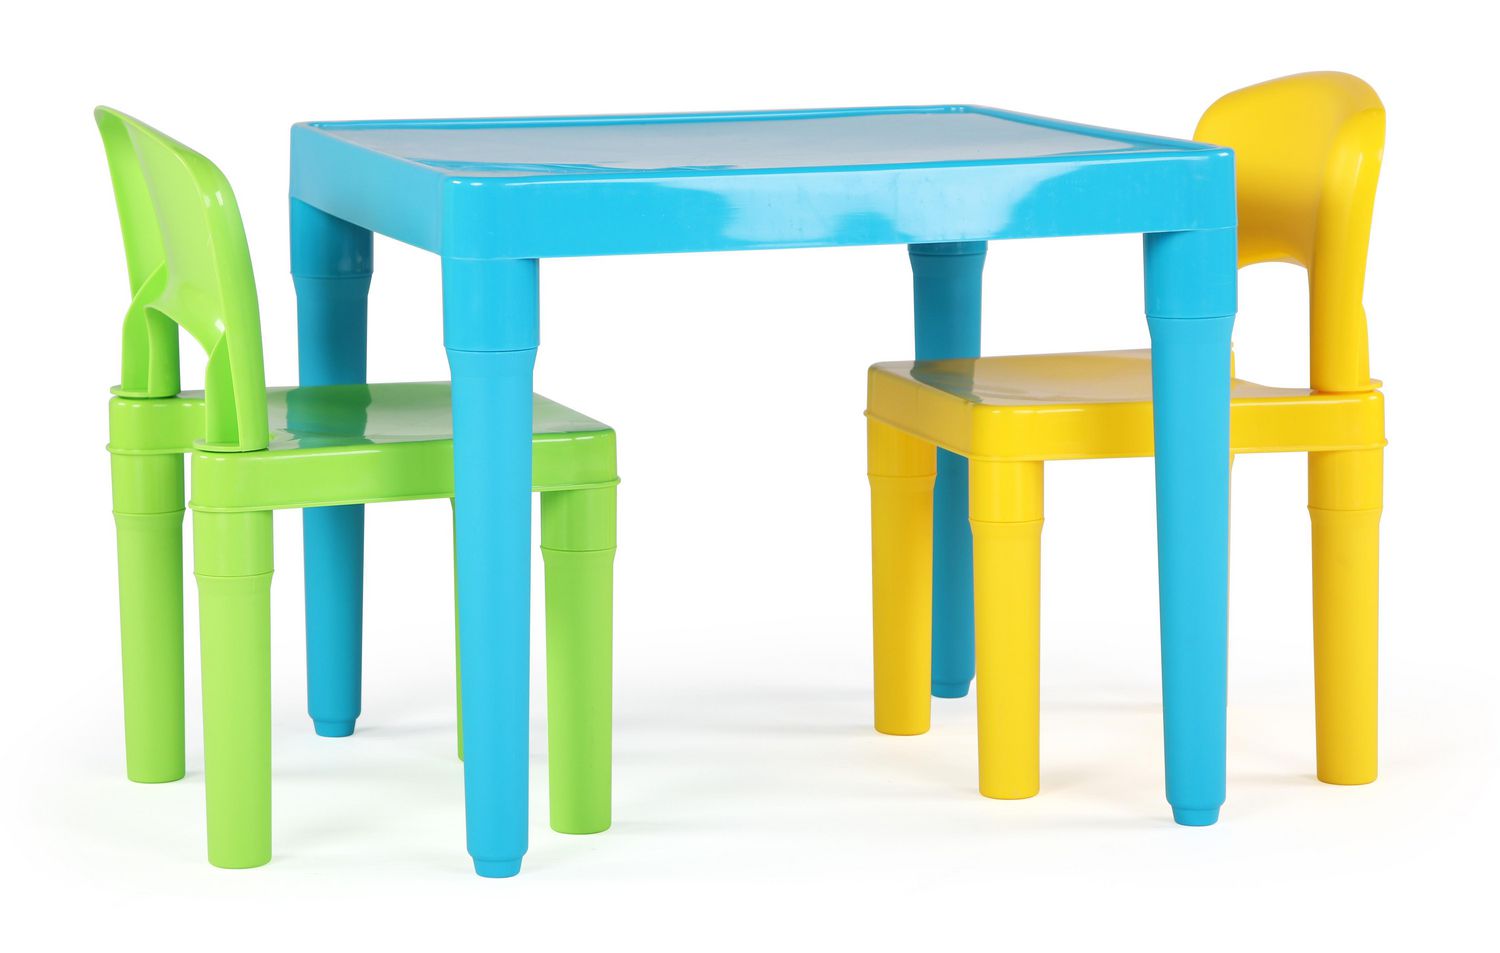 Table et 4 chaises en plastique légères pour enfant Humble Crew